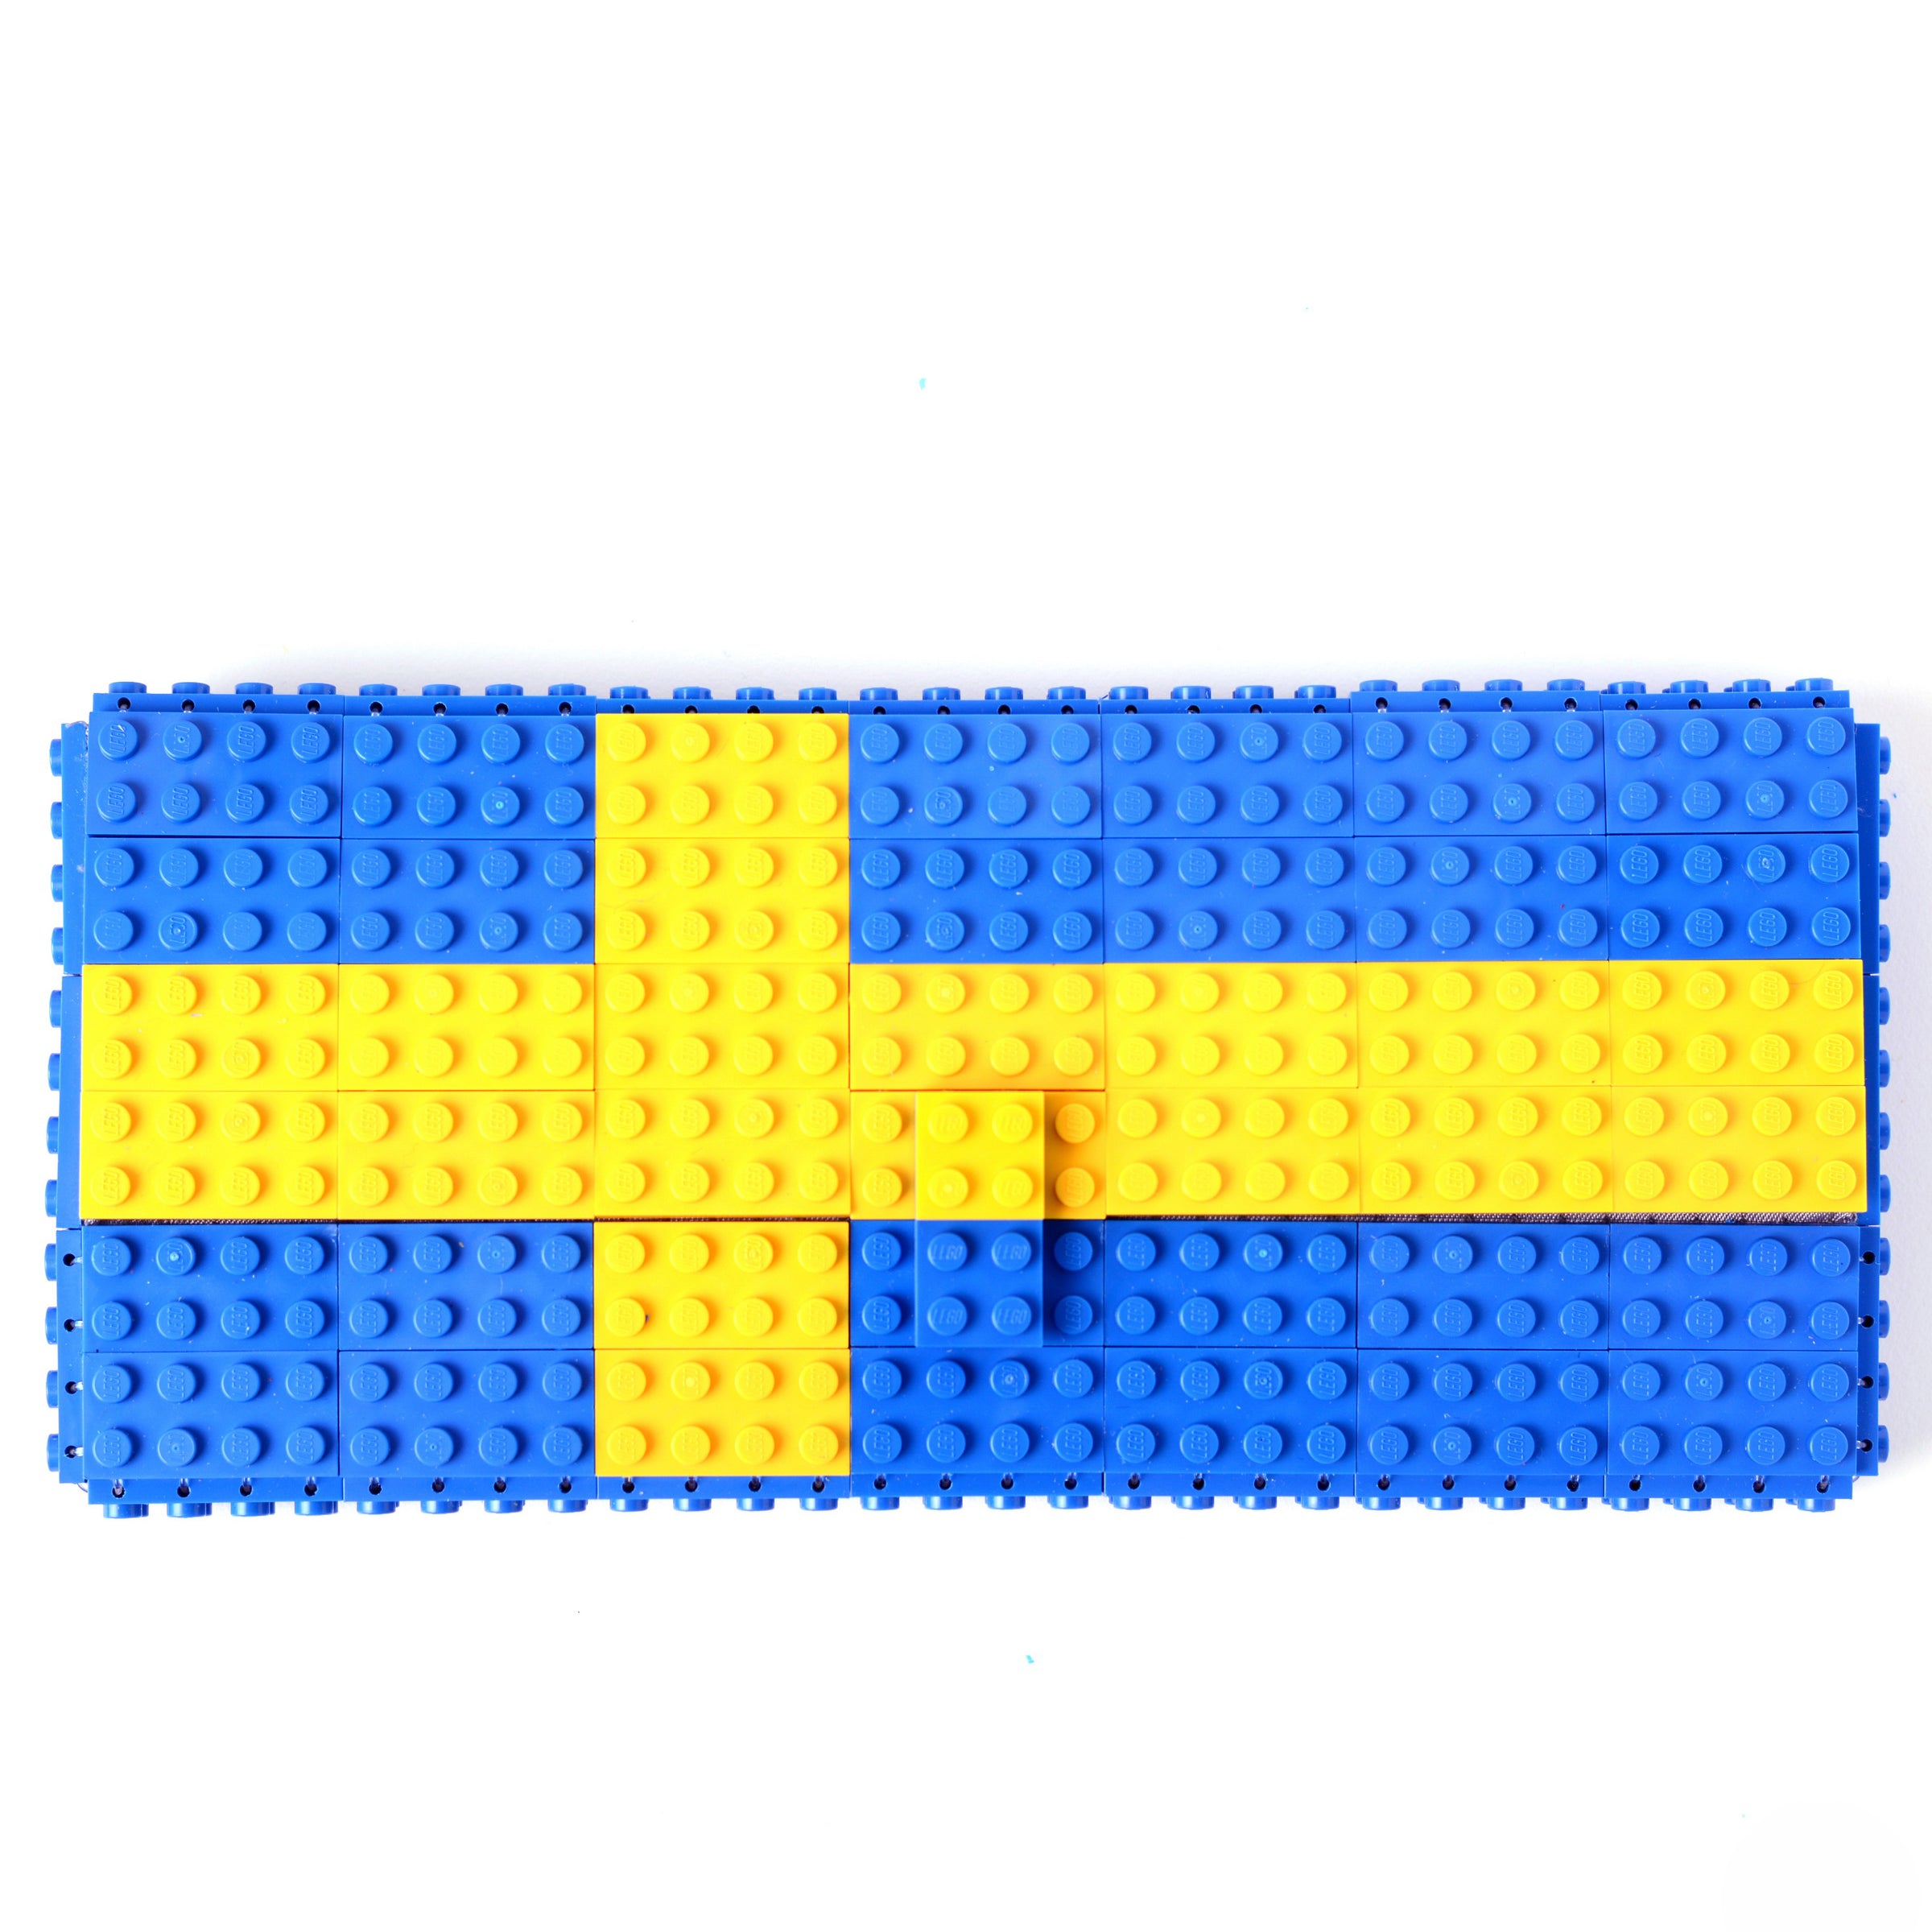 Swedish flag clutch